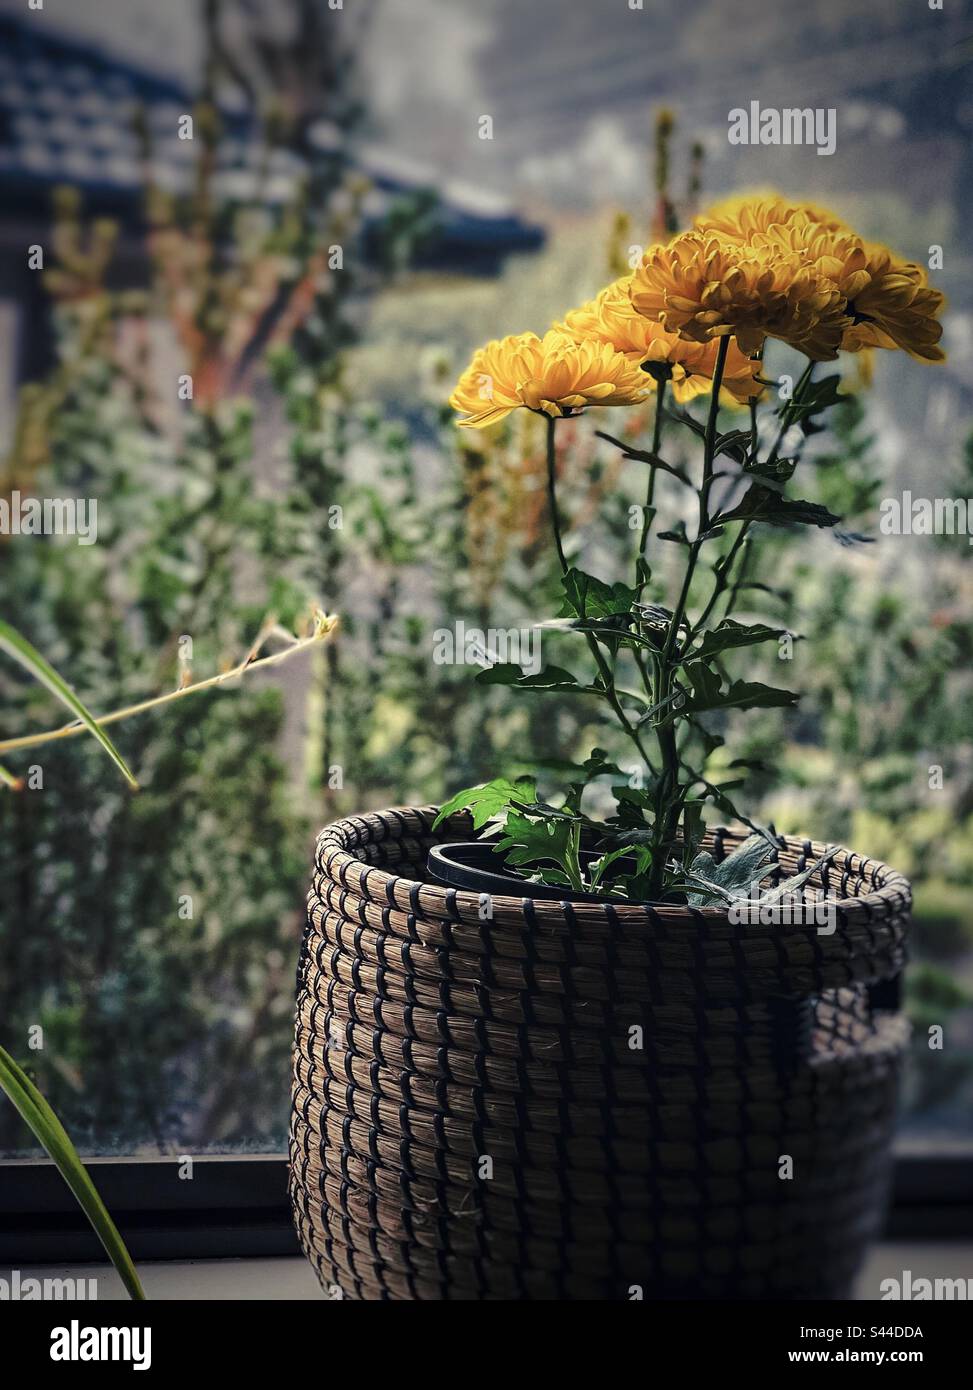 Colore del davanzale in una mattina nebbia. Pianta di fioritura di crisantemo giallo in un cesto su un davanzale contro la vista della finestra di mattina di nebbia nel giardino. Foto Stock